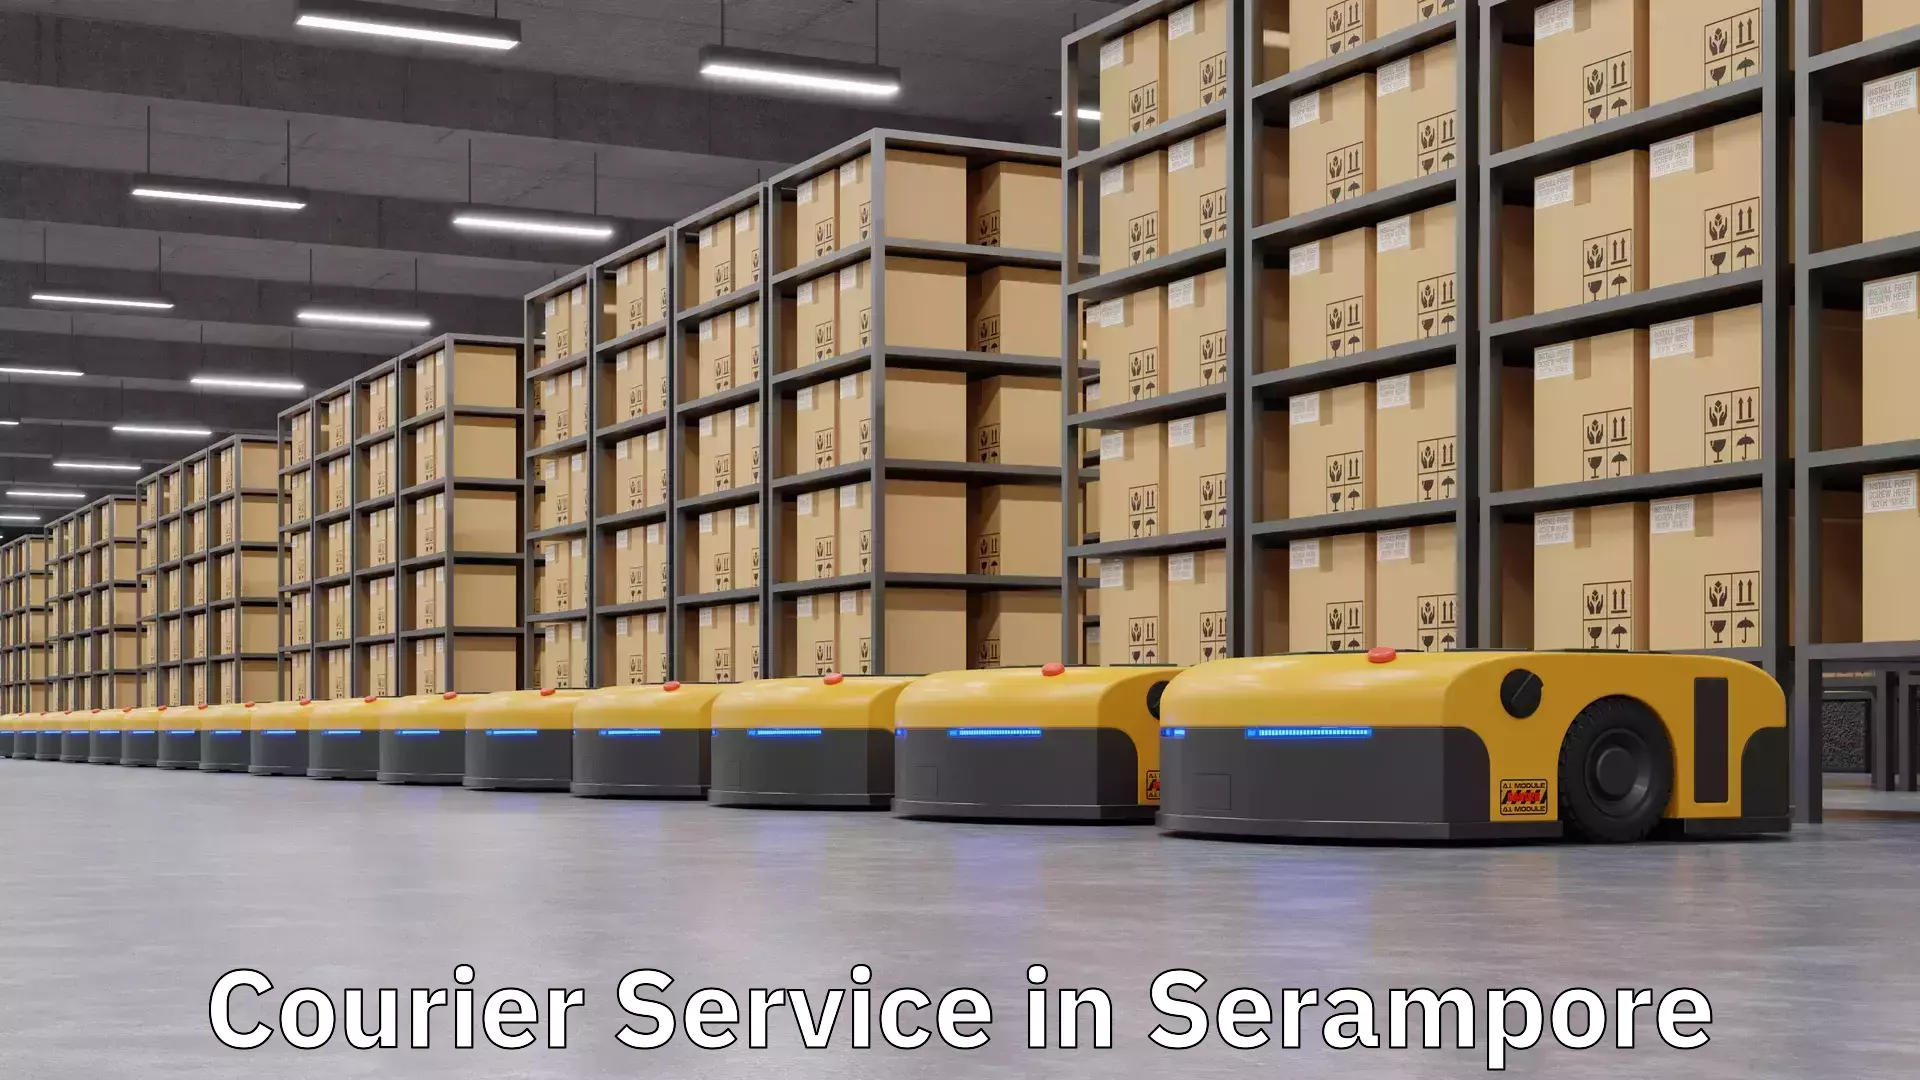 Secure packaging in Serampore